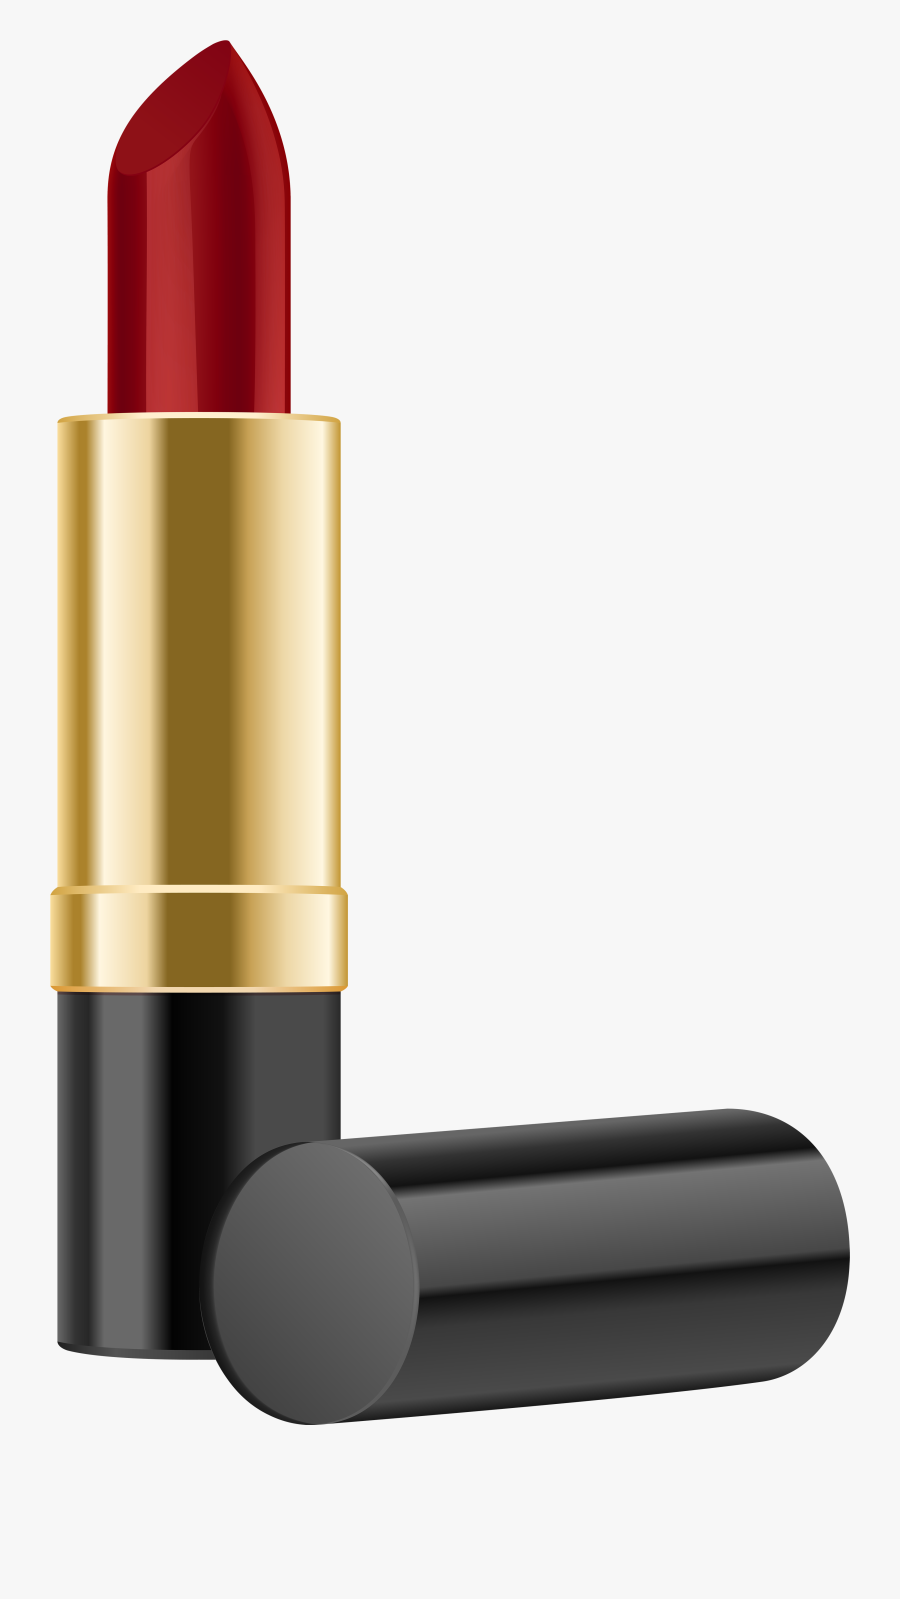 Lipstick Clip Art Image - Lipstick Clipart Transparent Background, Transparent Clipart